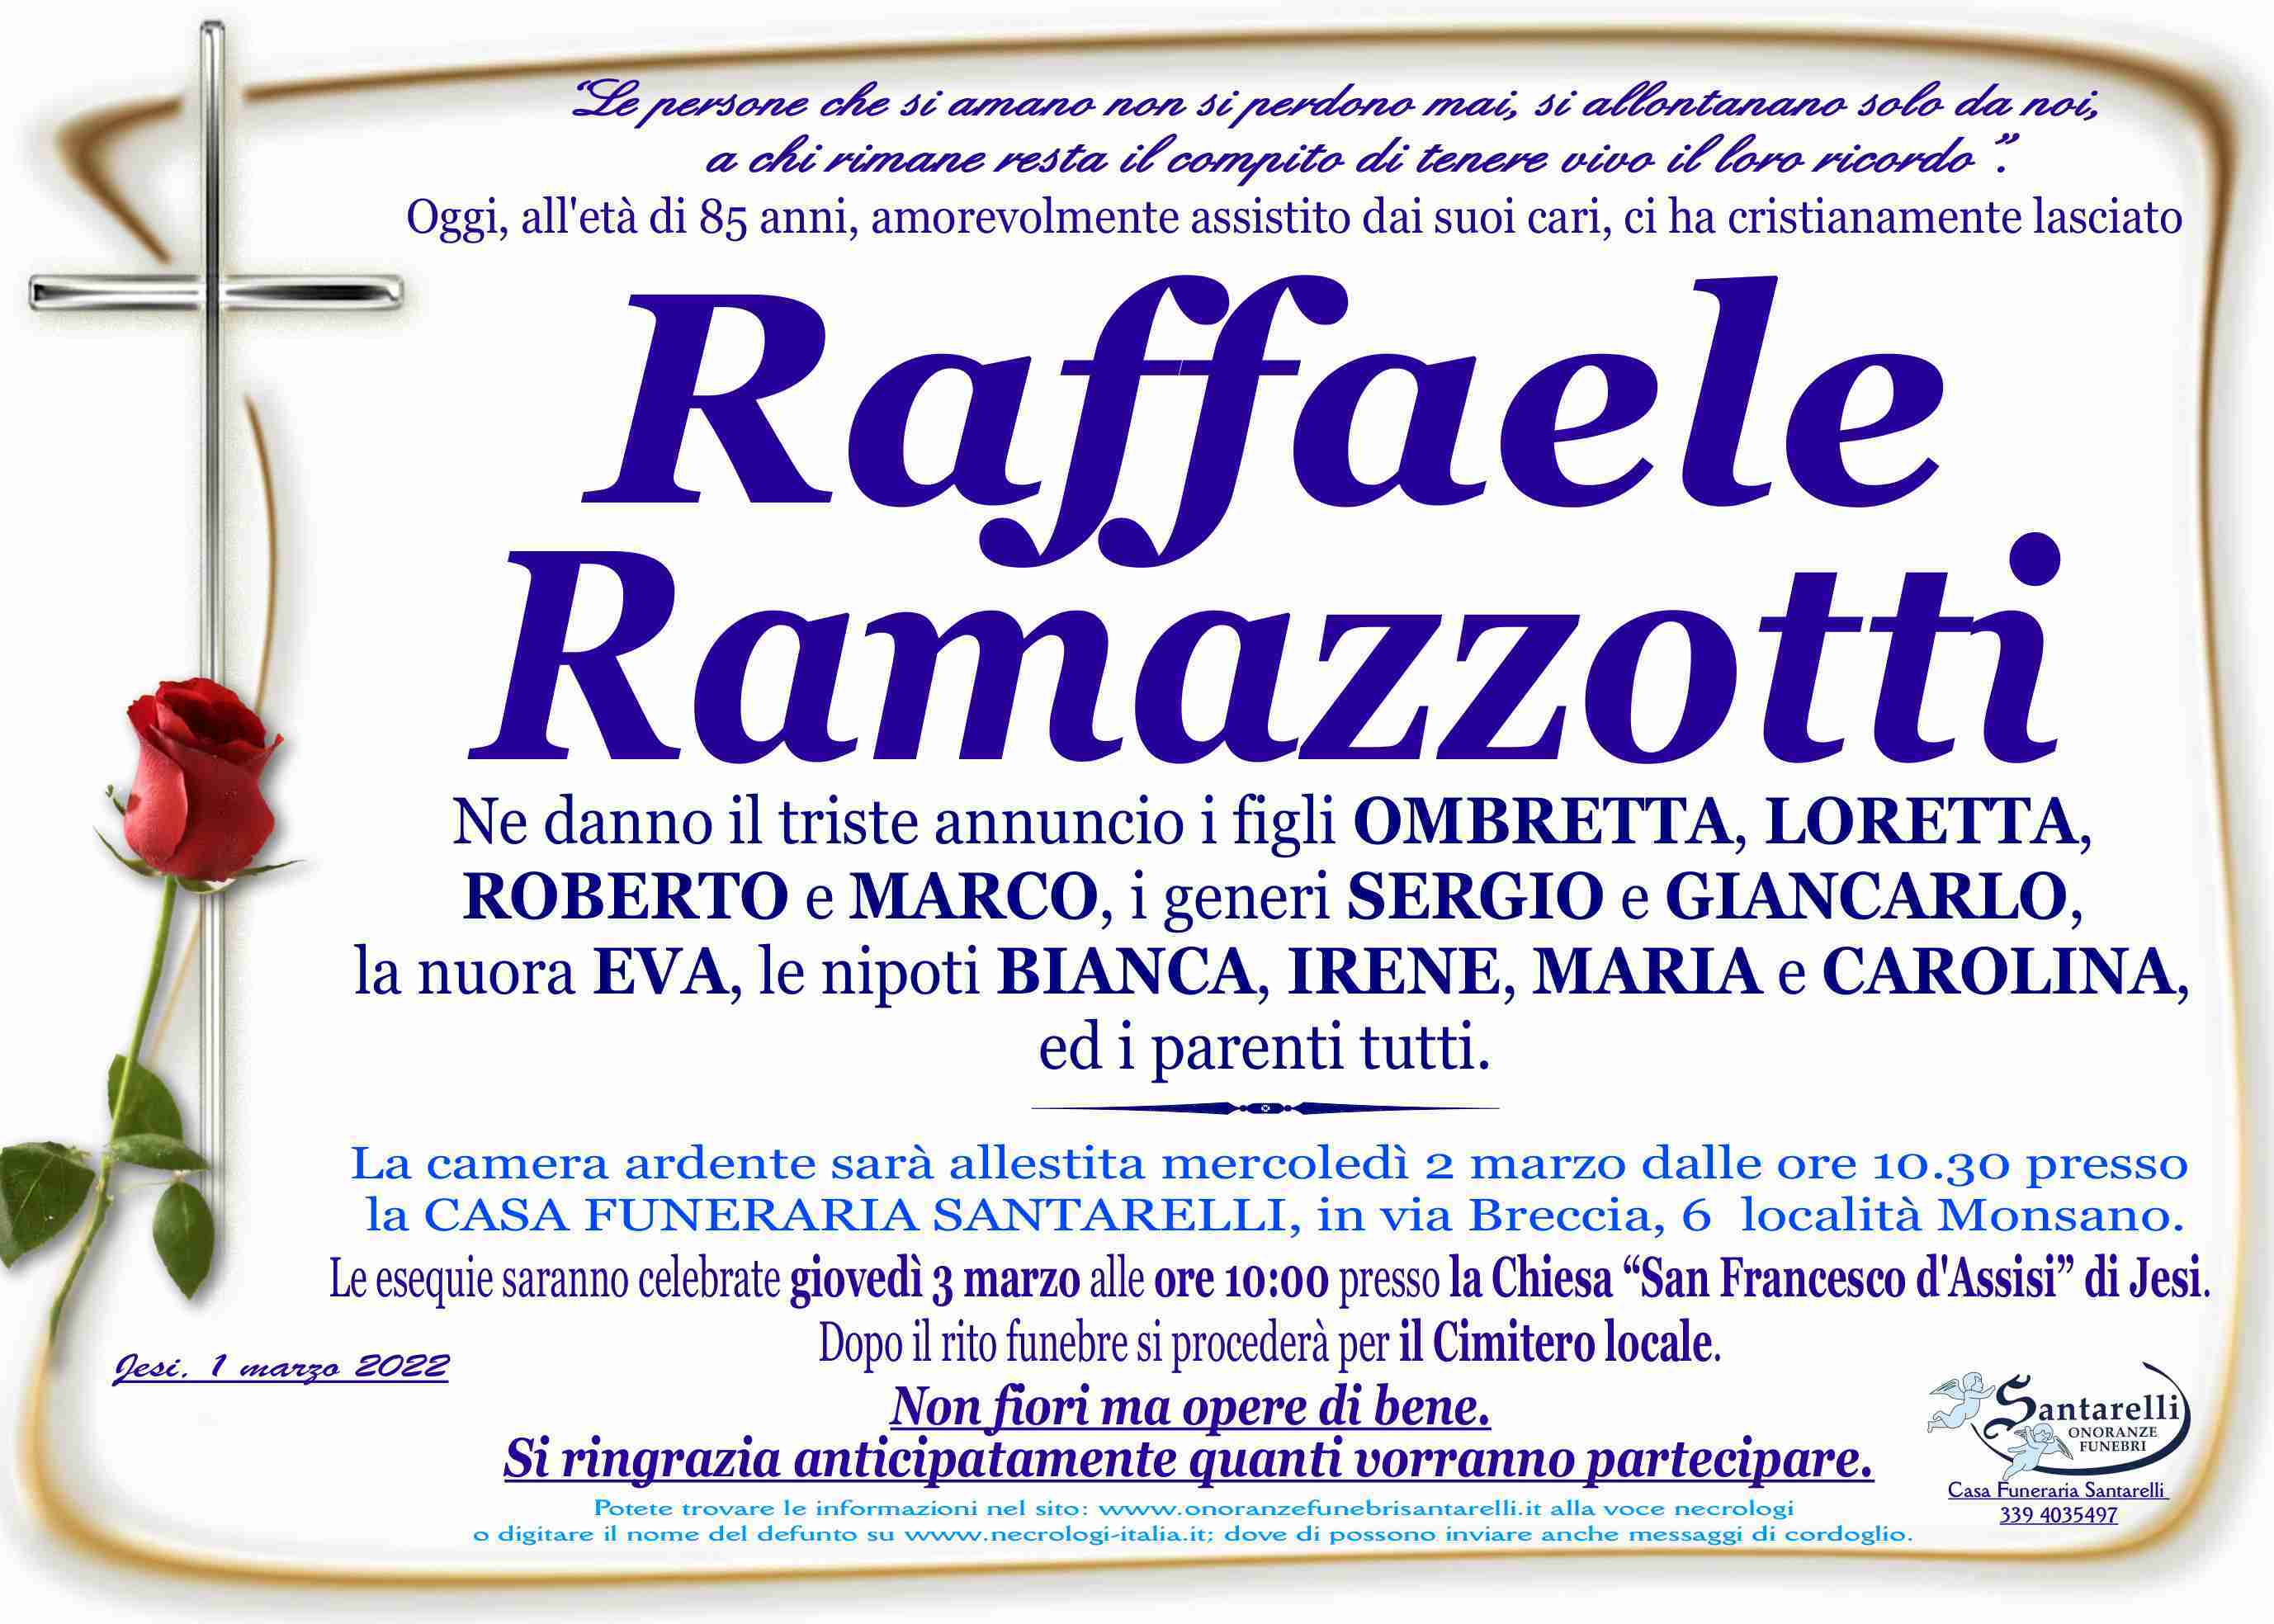 Raffaele Ramazzotti